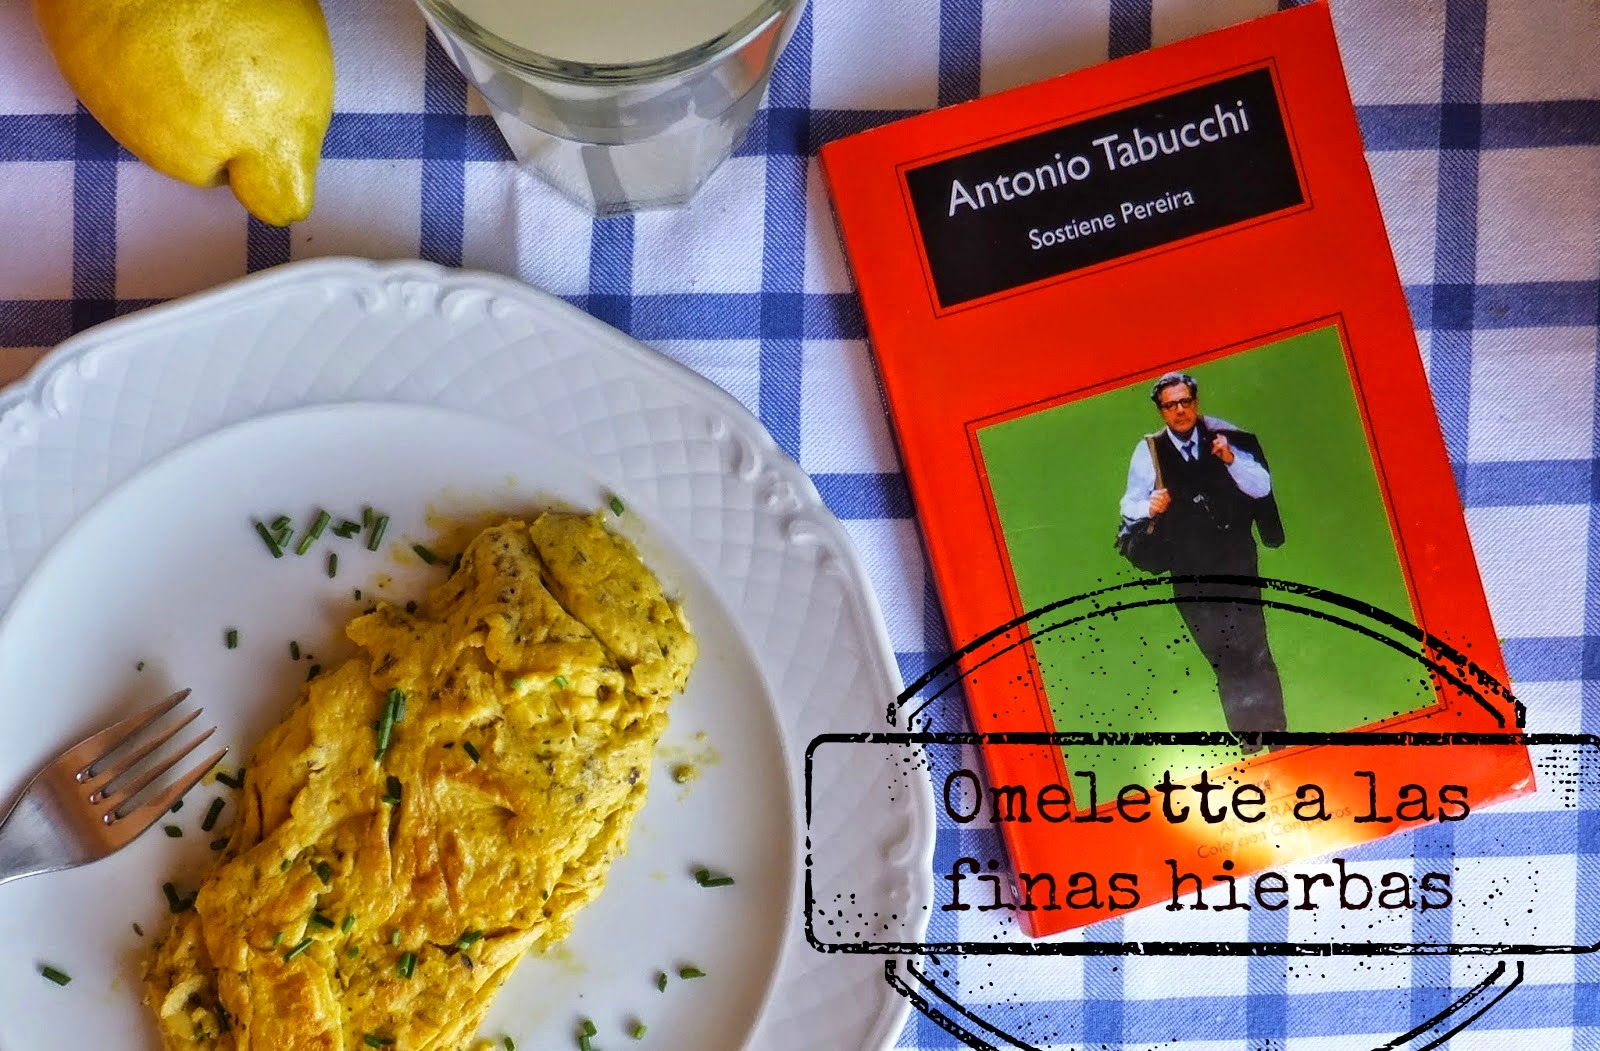 Omelette A Las Finas Hierbas Al Estilo Pereira
